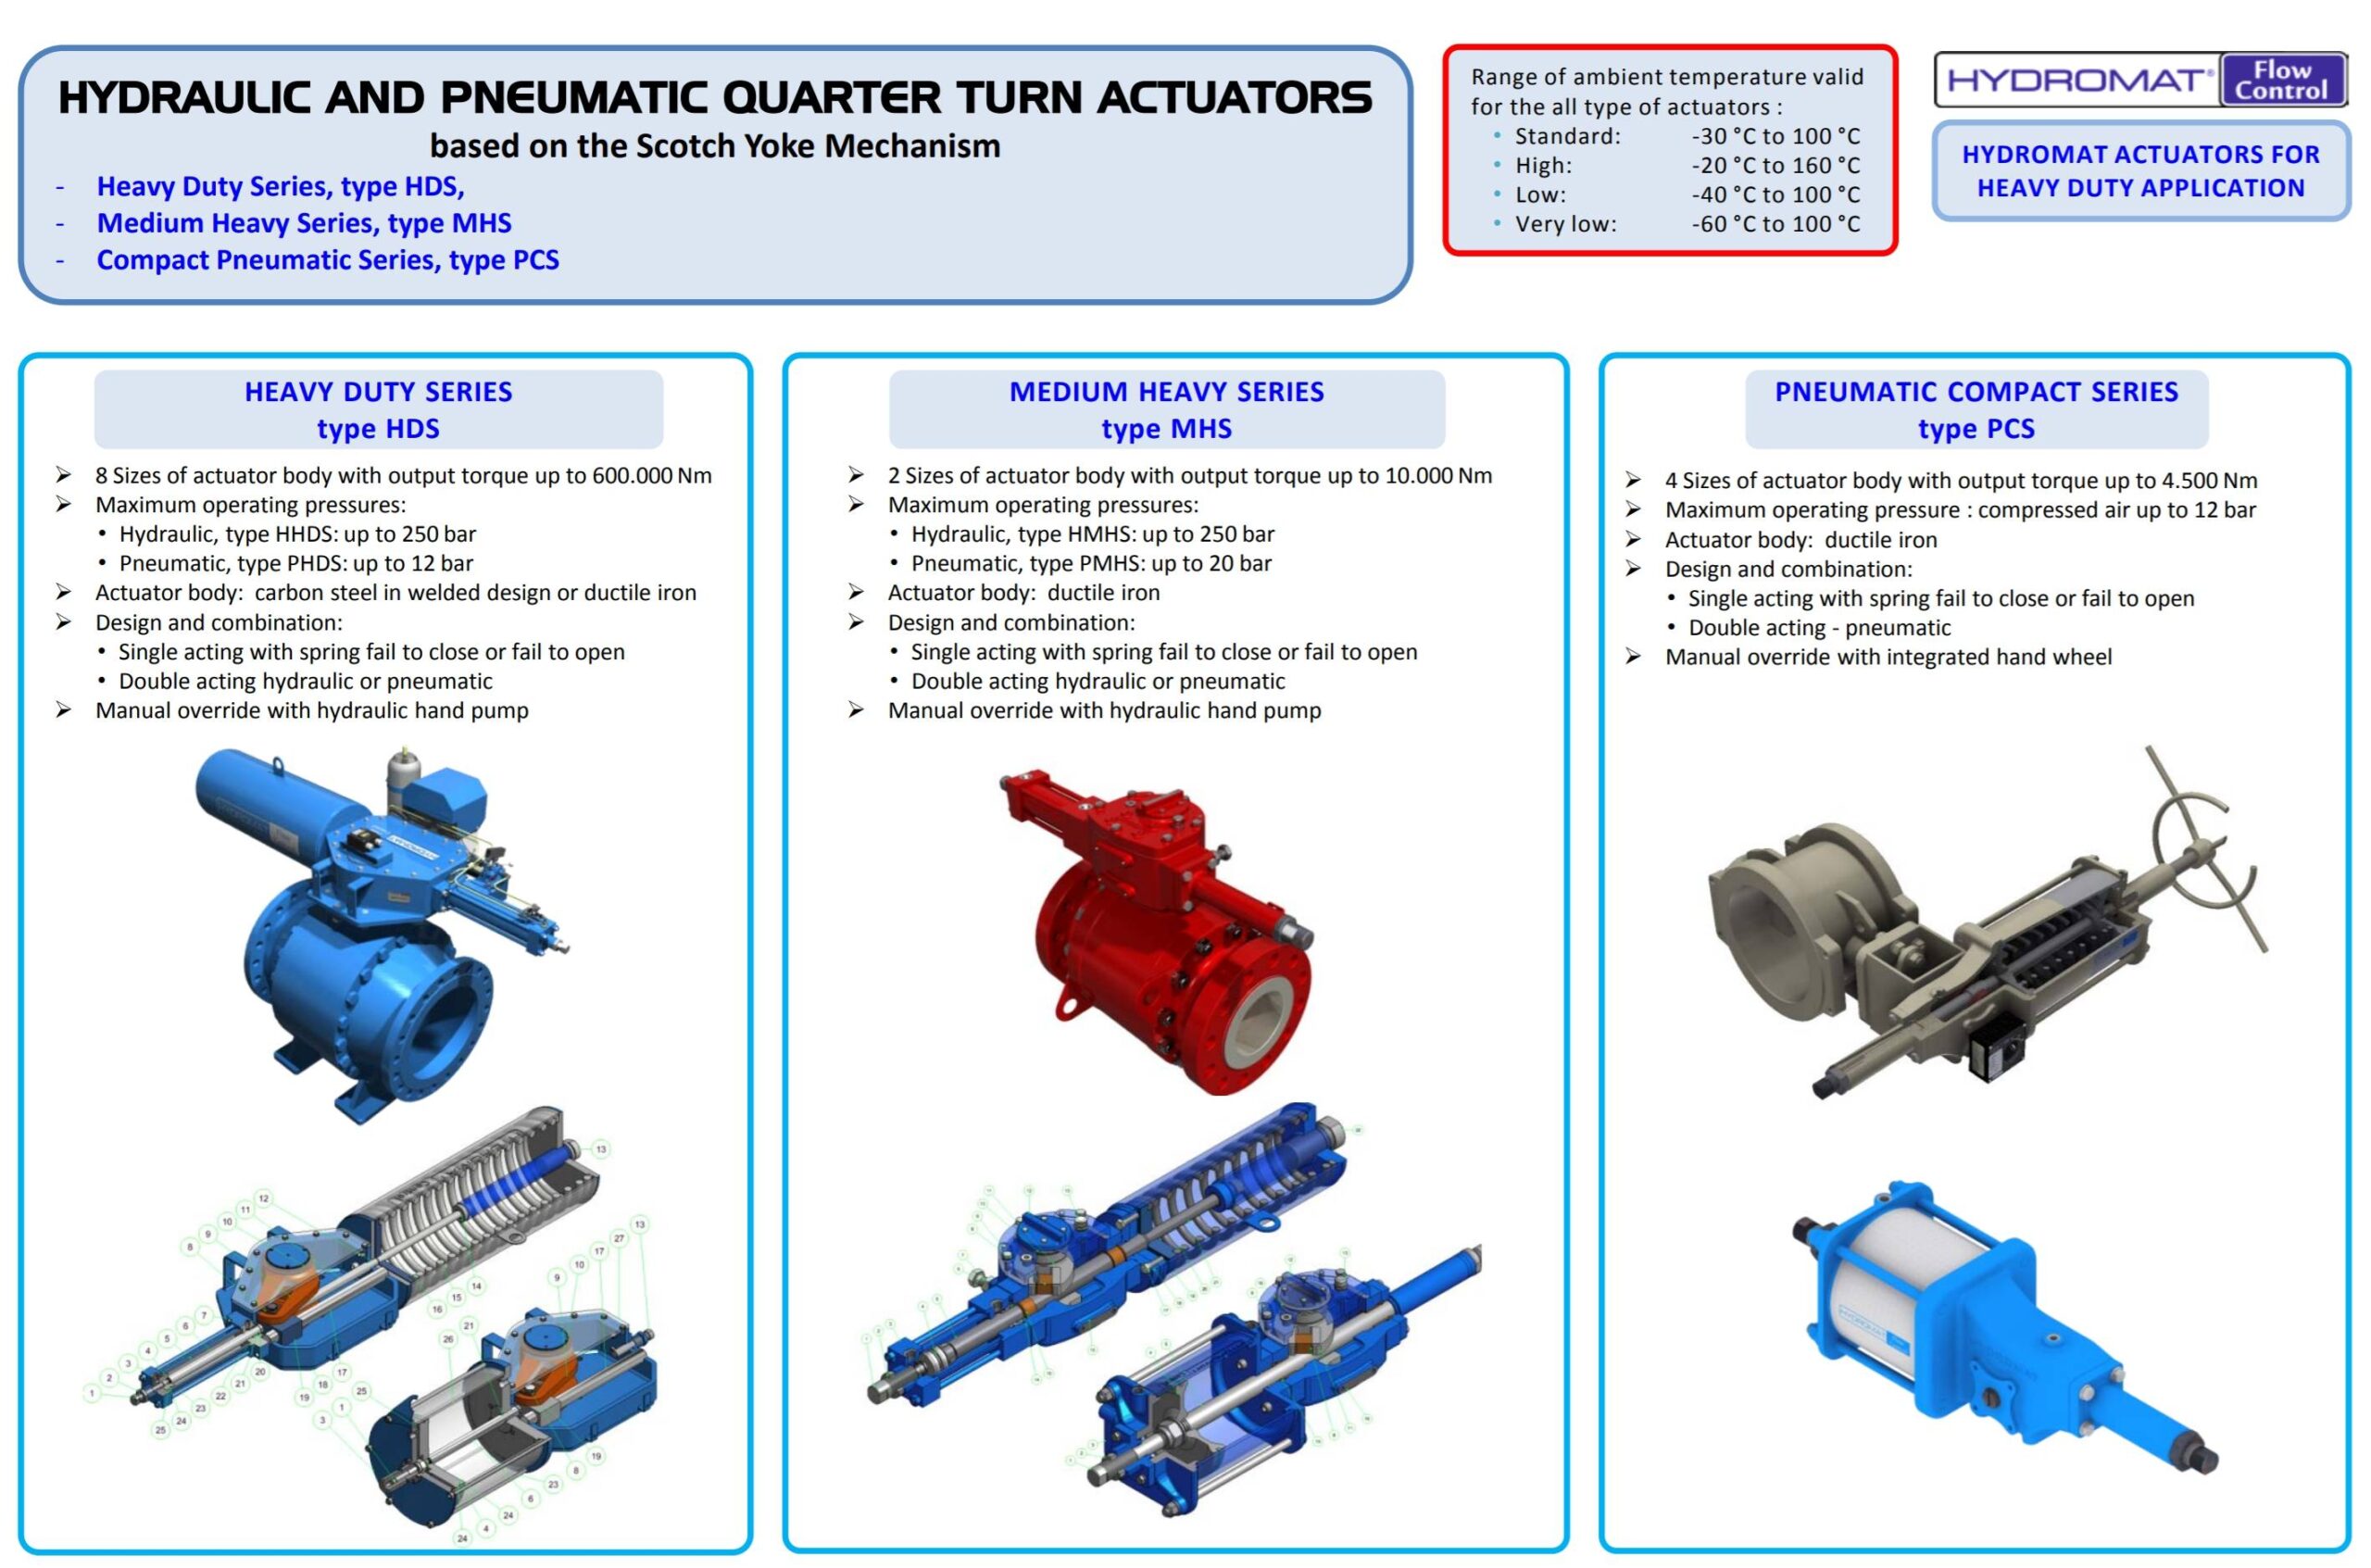 quarter turn actuators hydromat